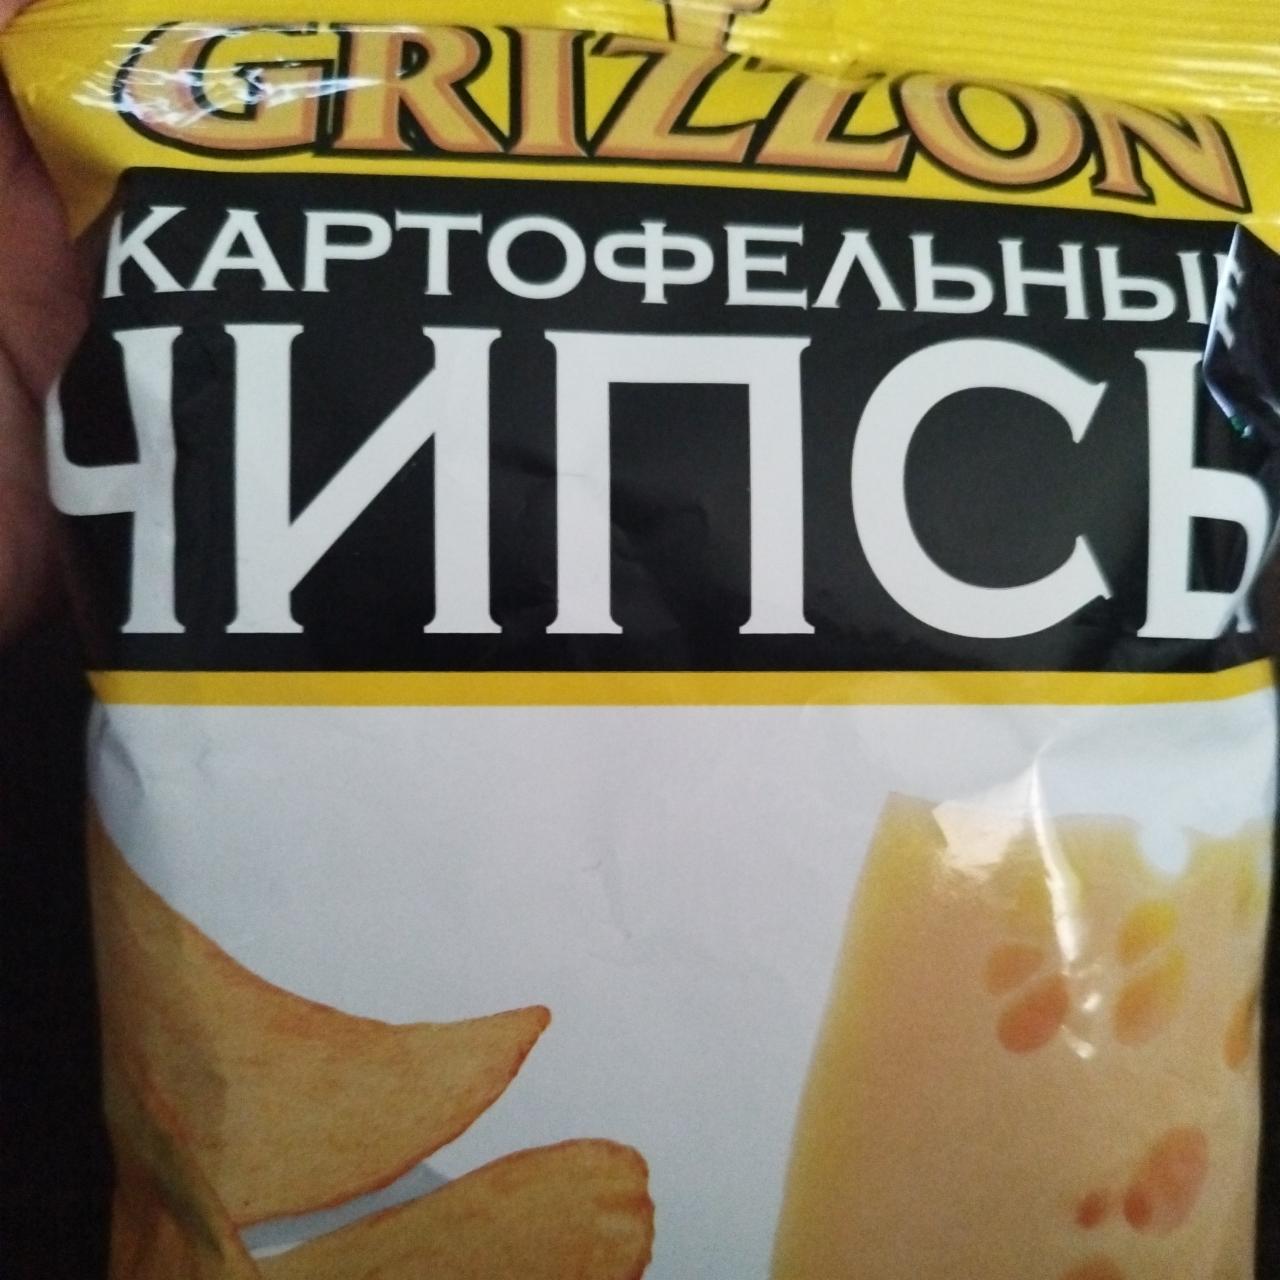 Фото - Чипсы картофельные со вкусом сыра Grizzon